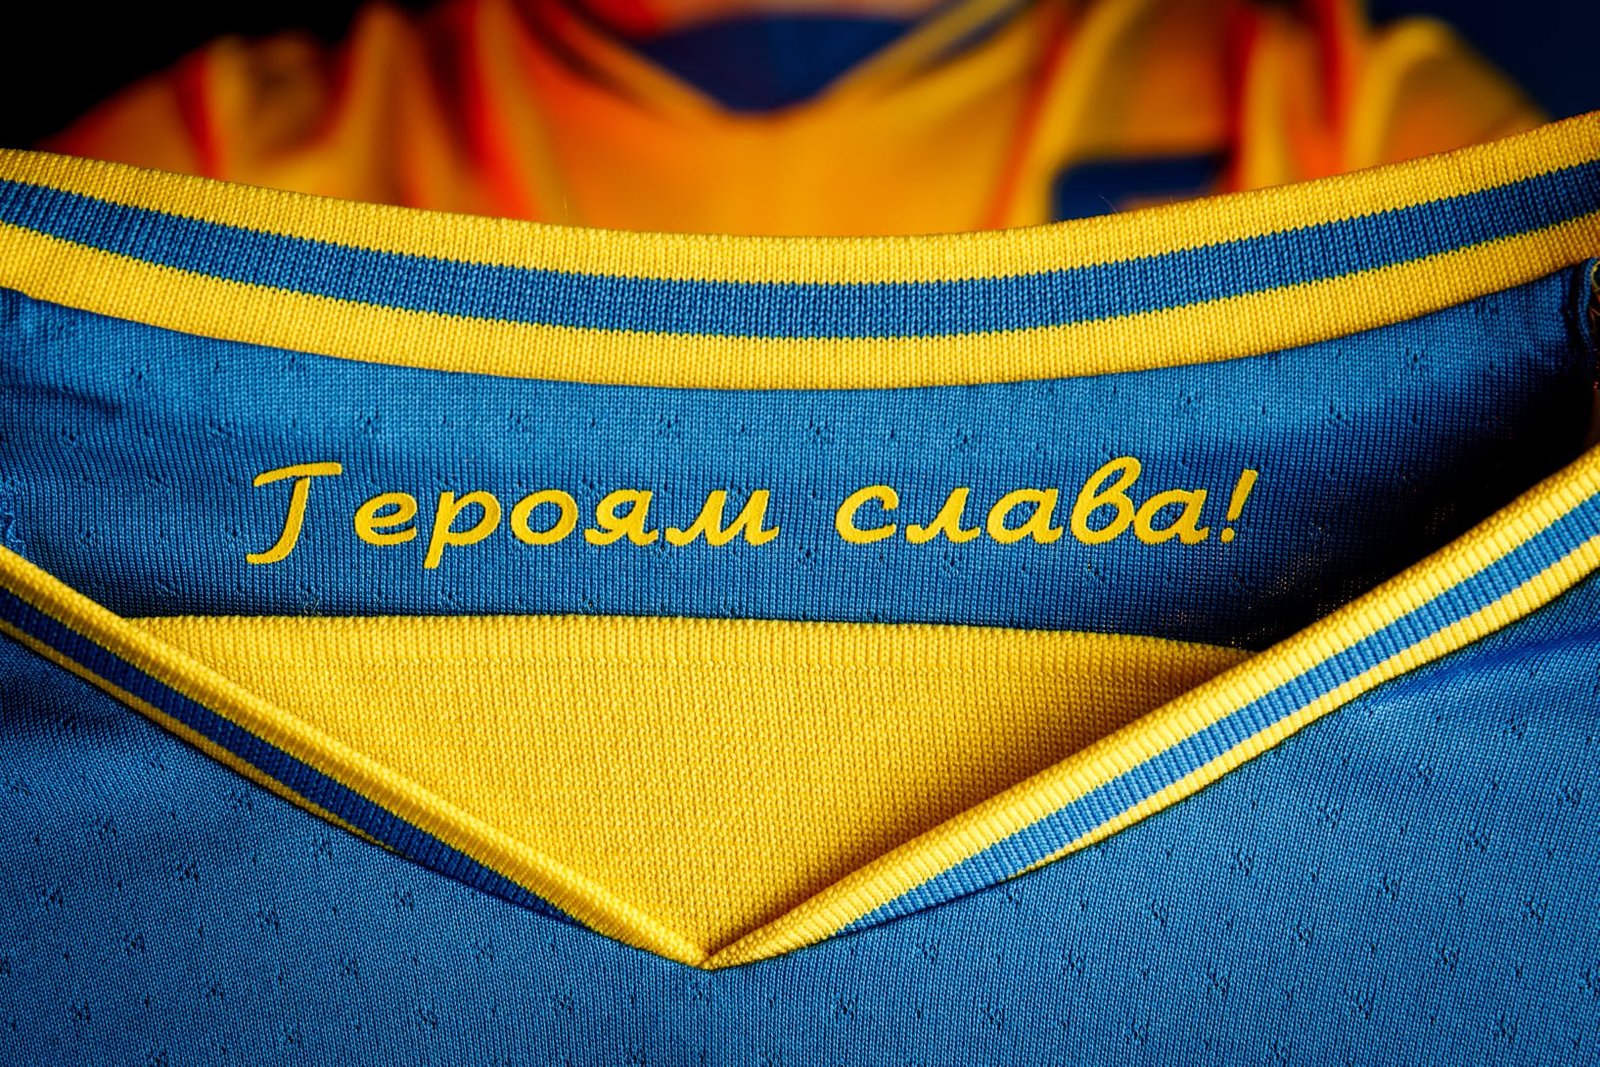 Павелко завершив переговори з УЄФА: гасло "Героям Слава" залишать, але заклеять емблемою